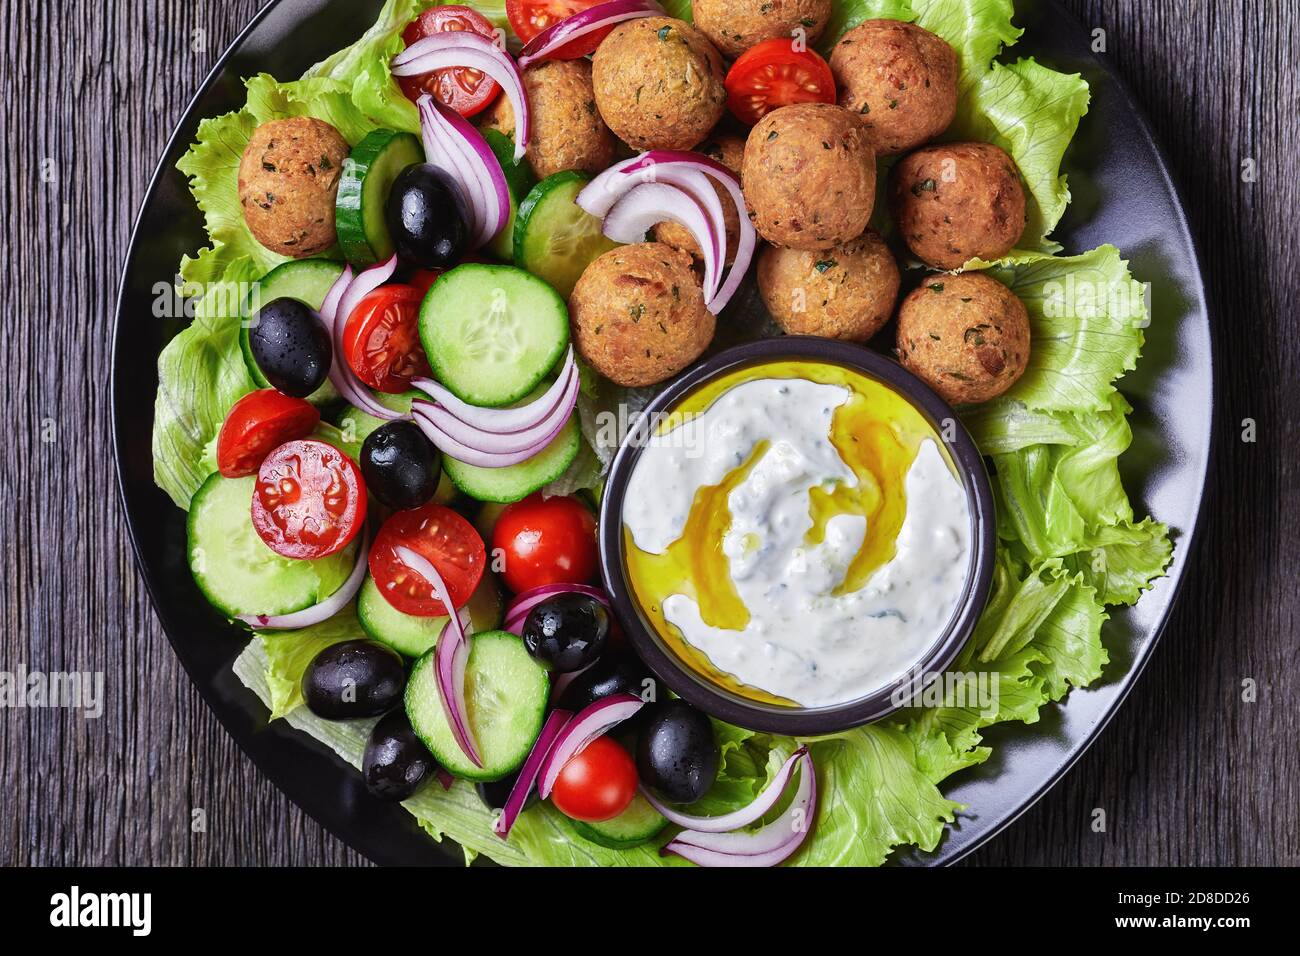 Assiette méditerranéenne de falafels, tomates, concombre, oignon rouge,  olives noires, sur les feuilles de salade fraîches servies avec de la sauce  tzatziki servie sur une sauce noire Photo Stock - Alamy